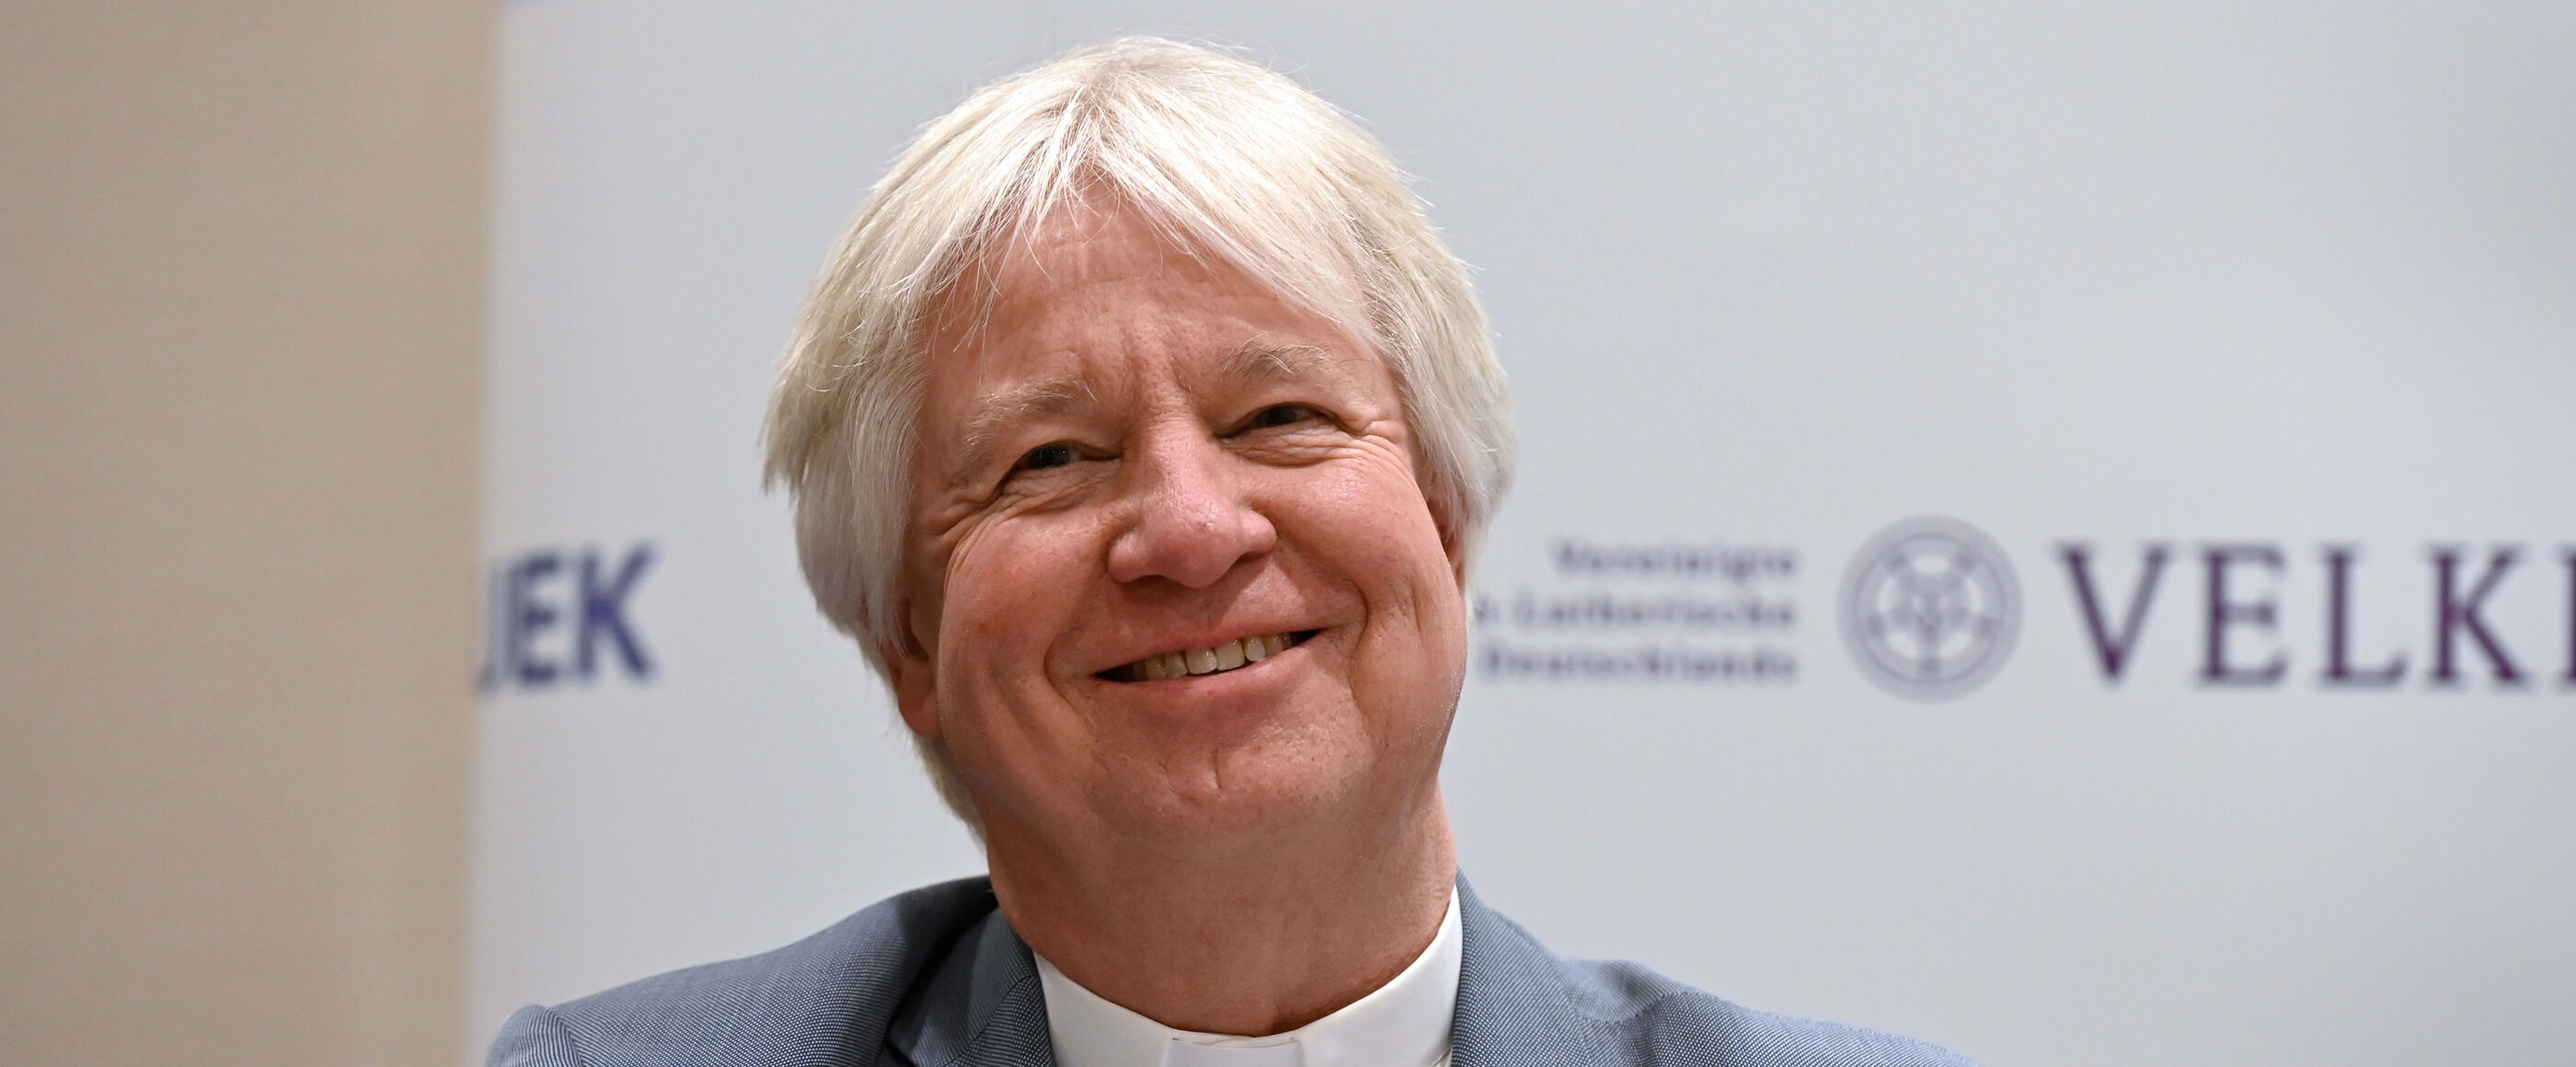 Ein Mann mit grauem Haar sitzt vor einer Stellwand mit der Aufschrift VELKD und UEK und lächelt.